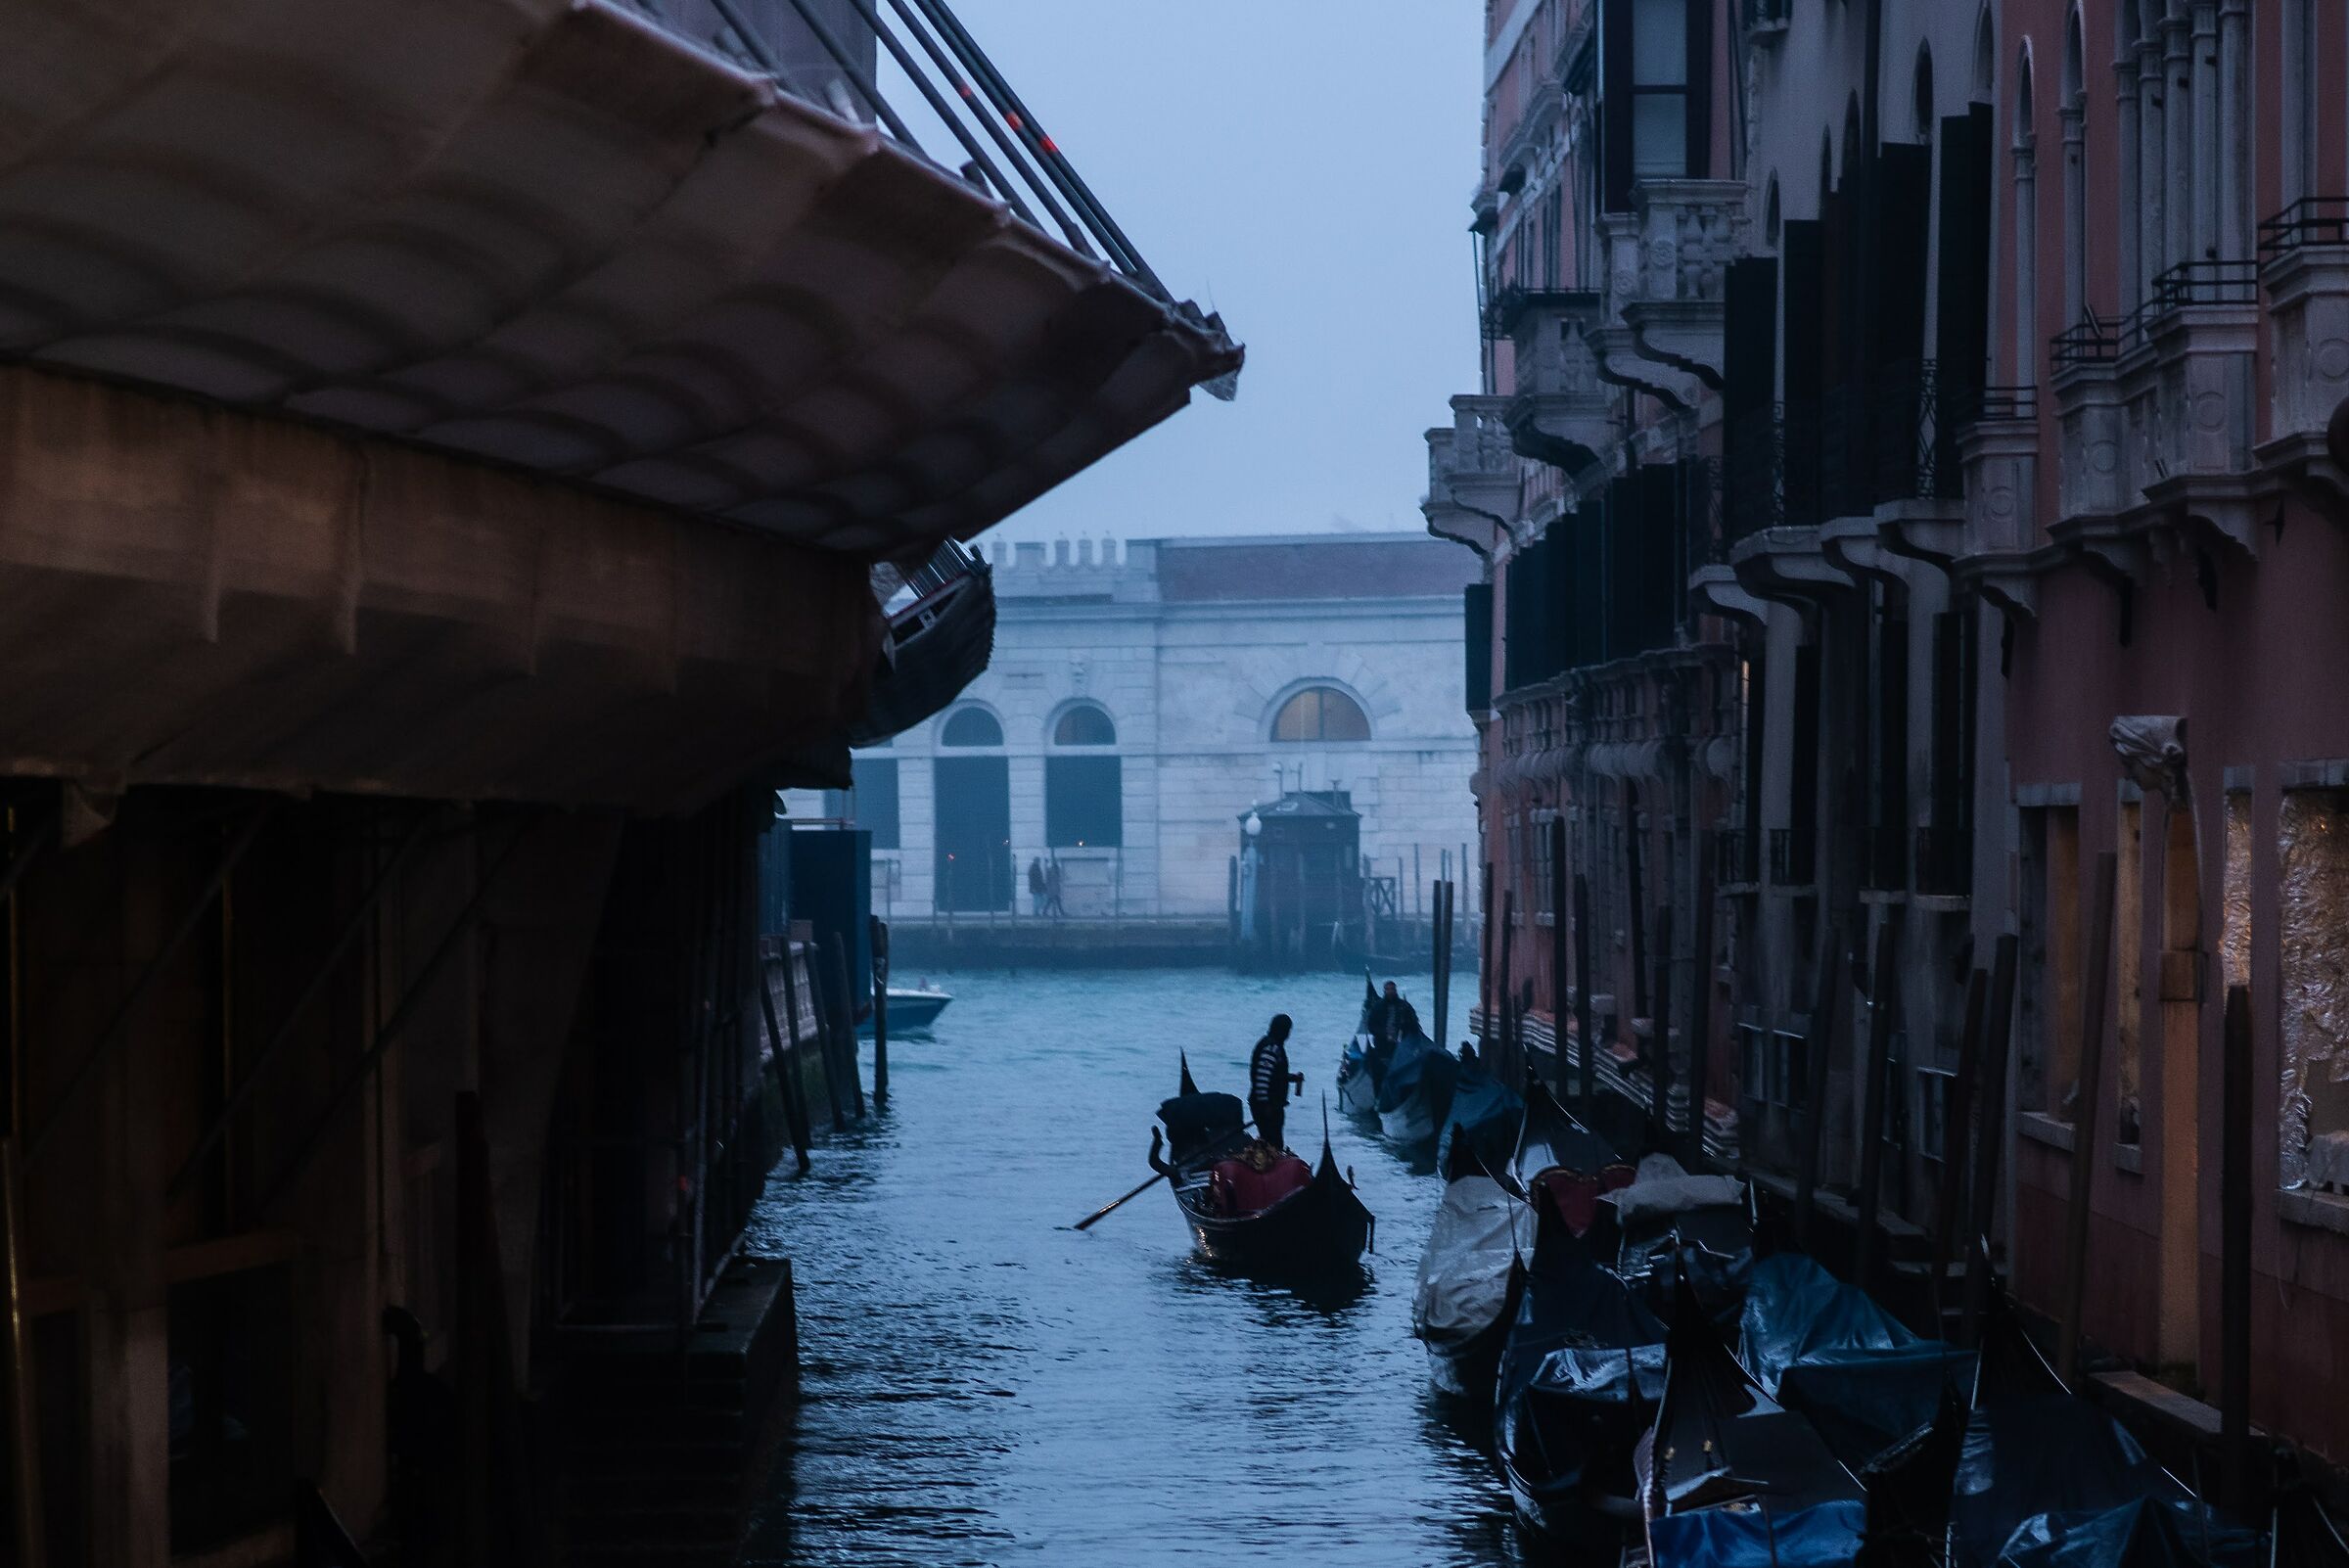 Venice at dusk ...